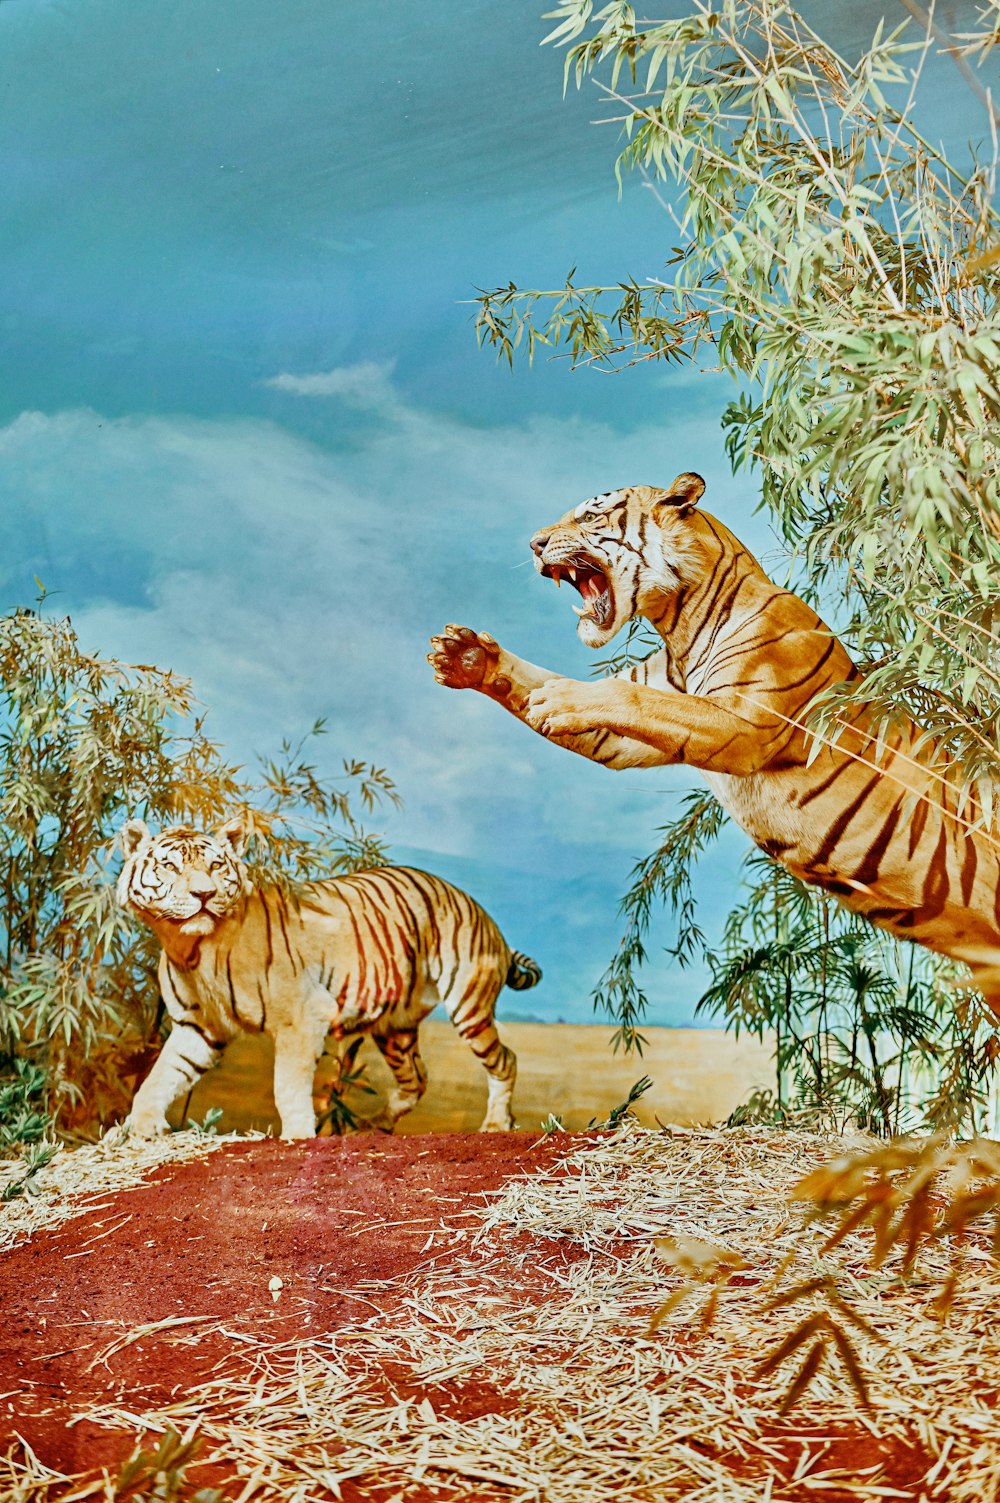 Tiger und Tiger auf schneebedecktem Boden Malerei